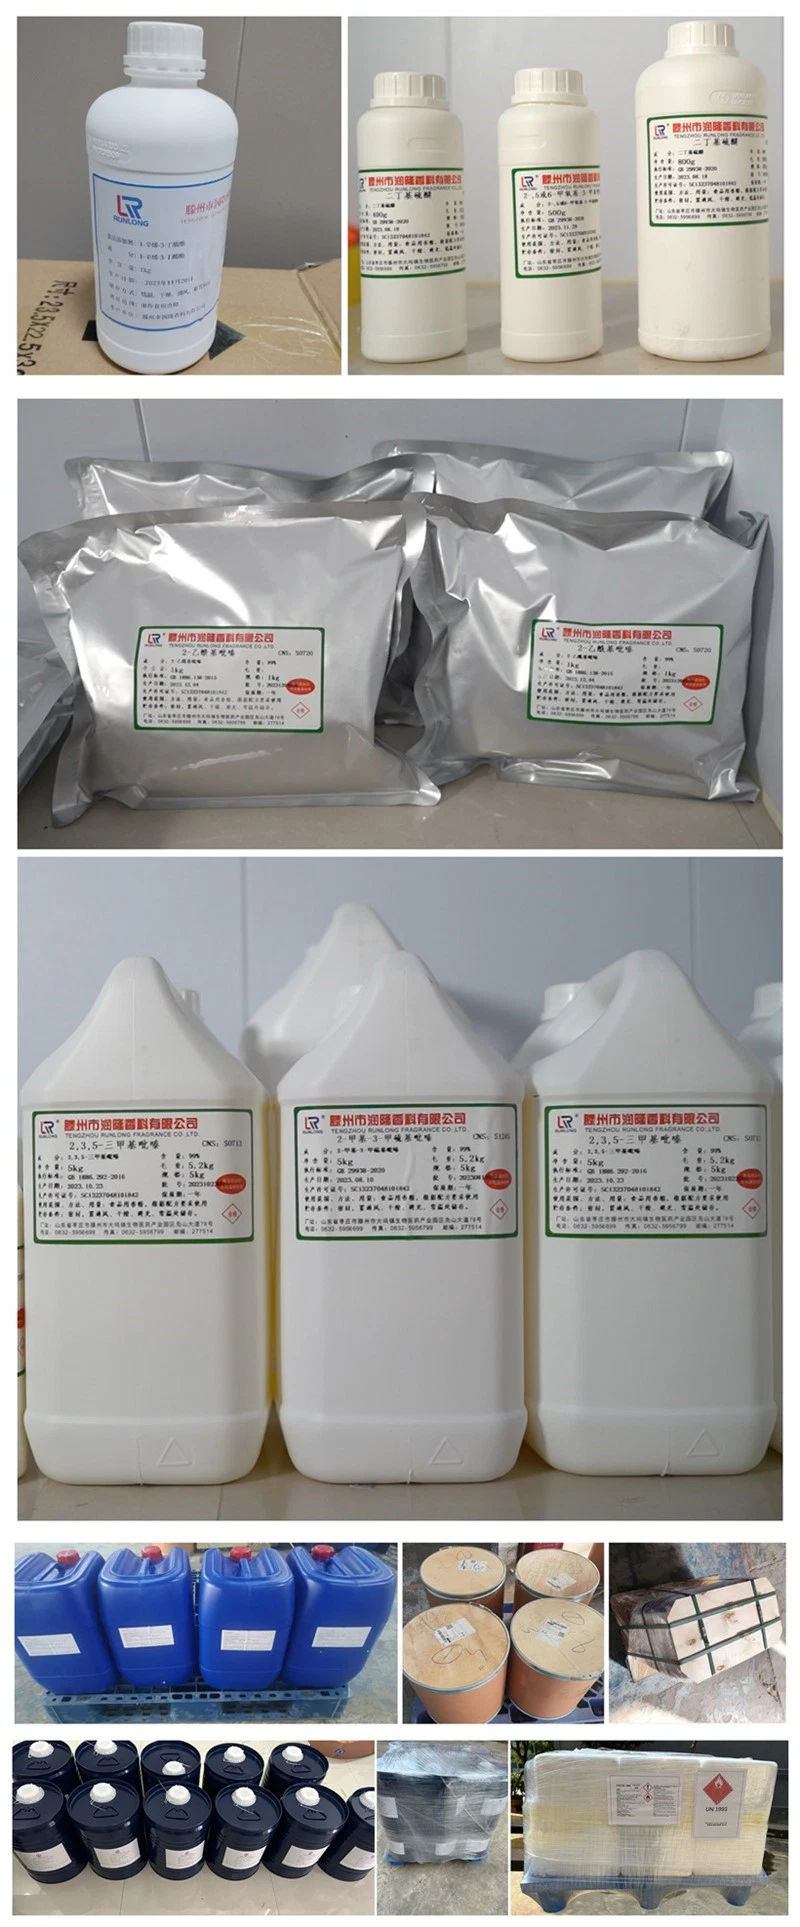 Tetramethylpyrazine CAS 1124-11-4 2, 3, 5, 6-Tetramethylpyrazine